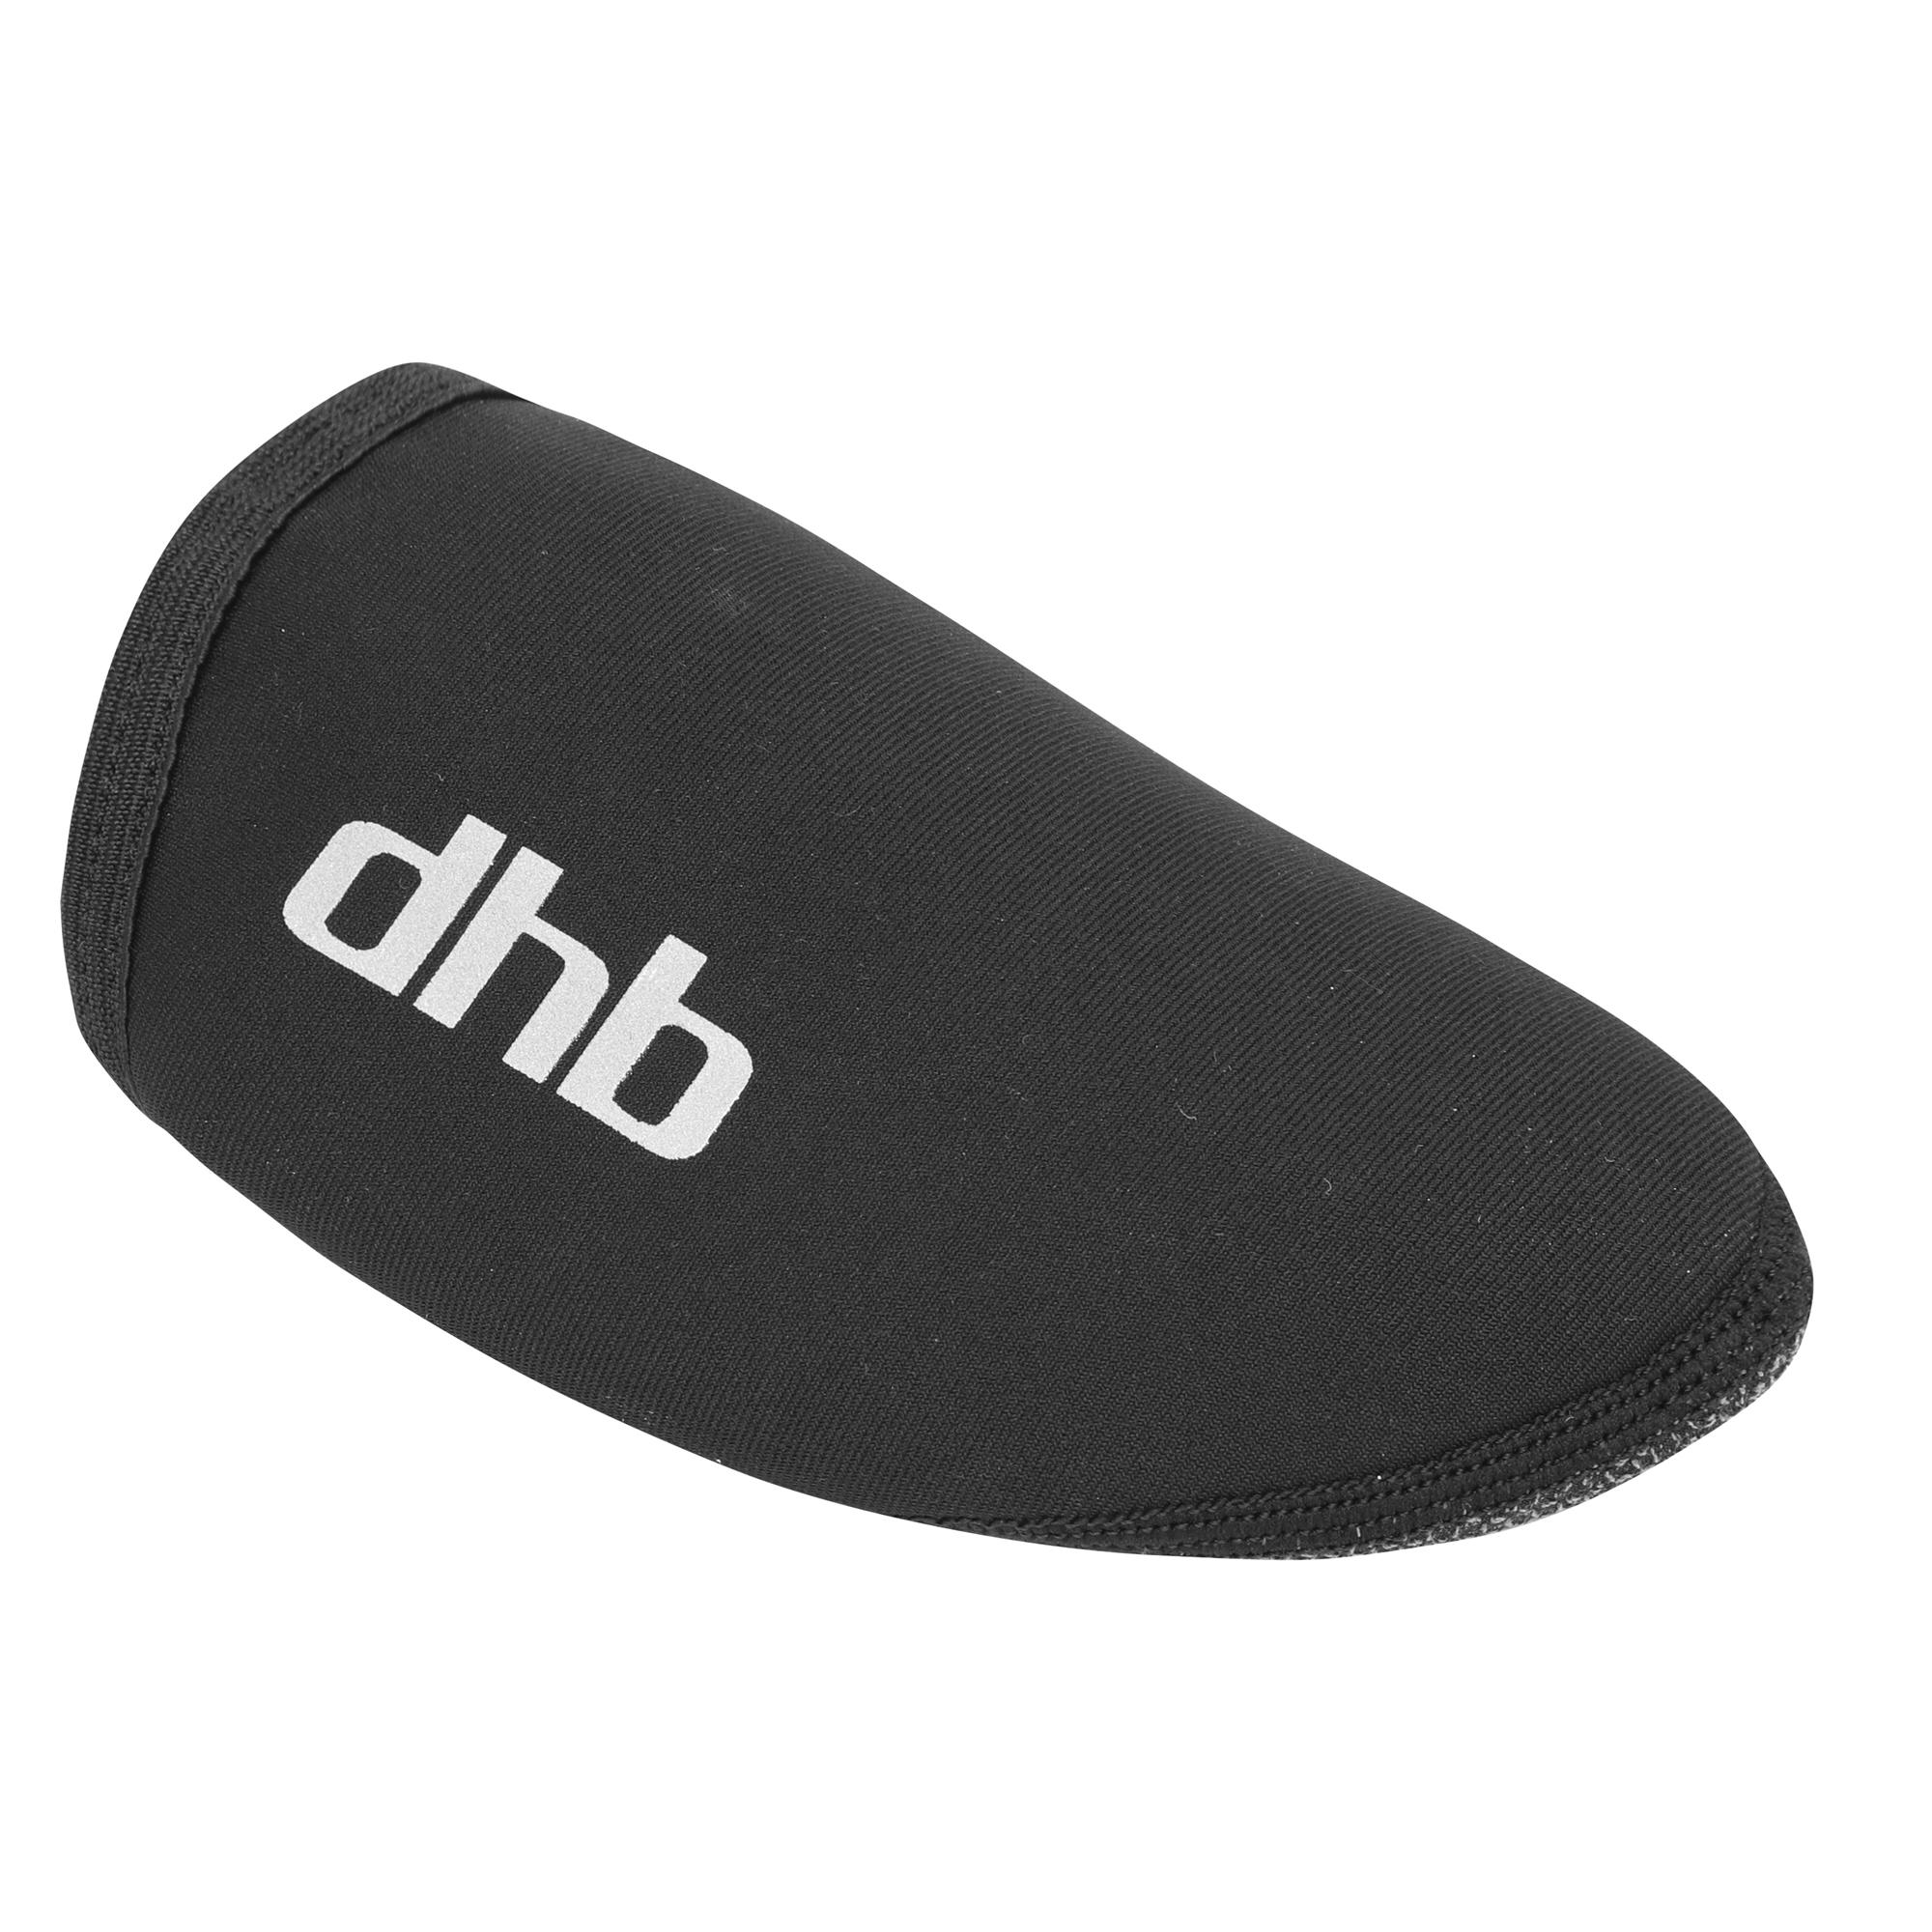 Dhb Toe Cover Overshoe - Black